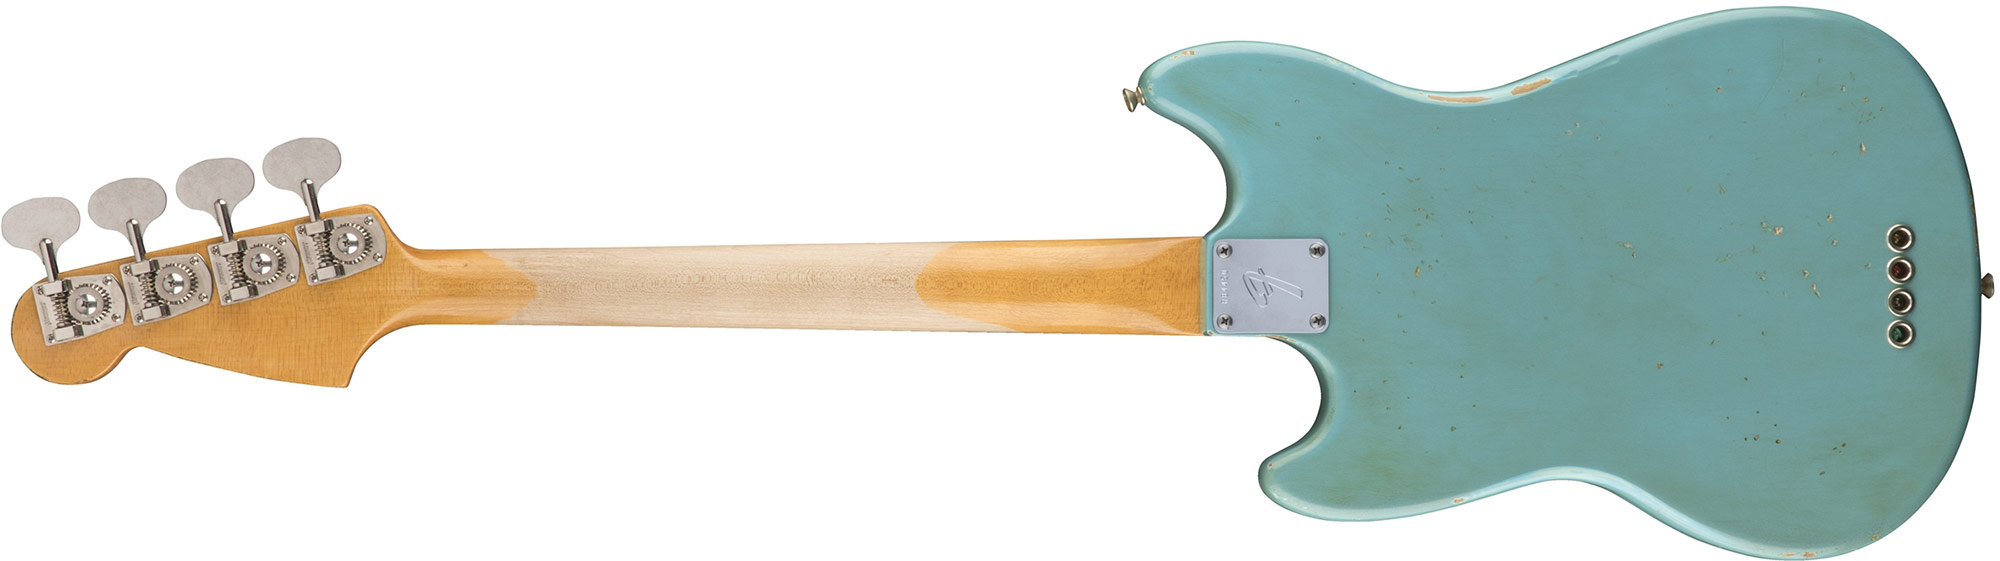 Fender Justin Meldal-johnsen Jmj Mustang Bass Road Worn Mex Rw - Faded Daphne Blue - Bajo eléctrico para niños - Variation 1